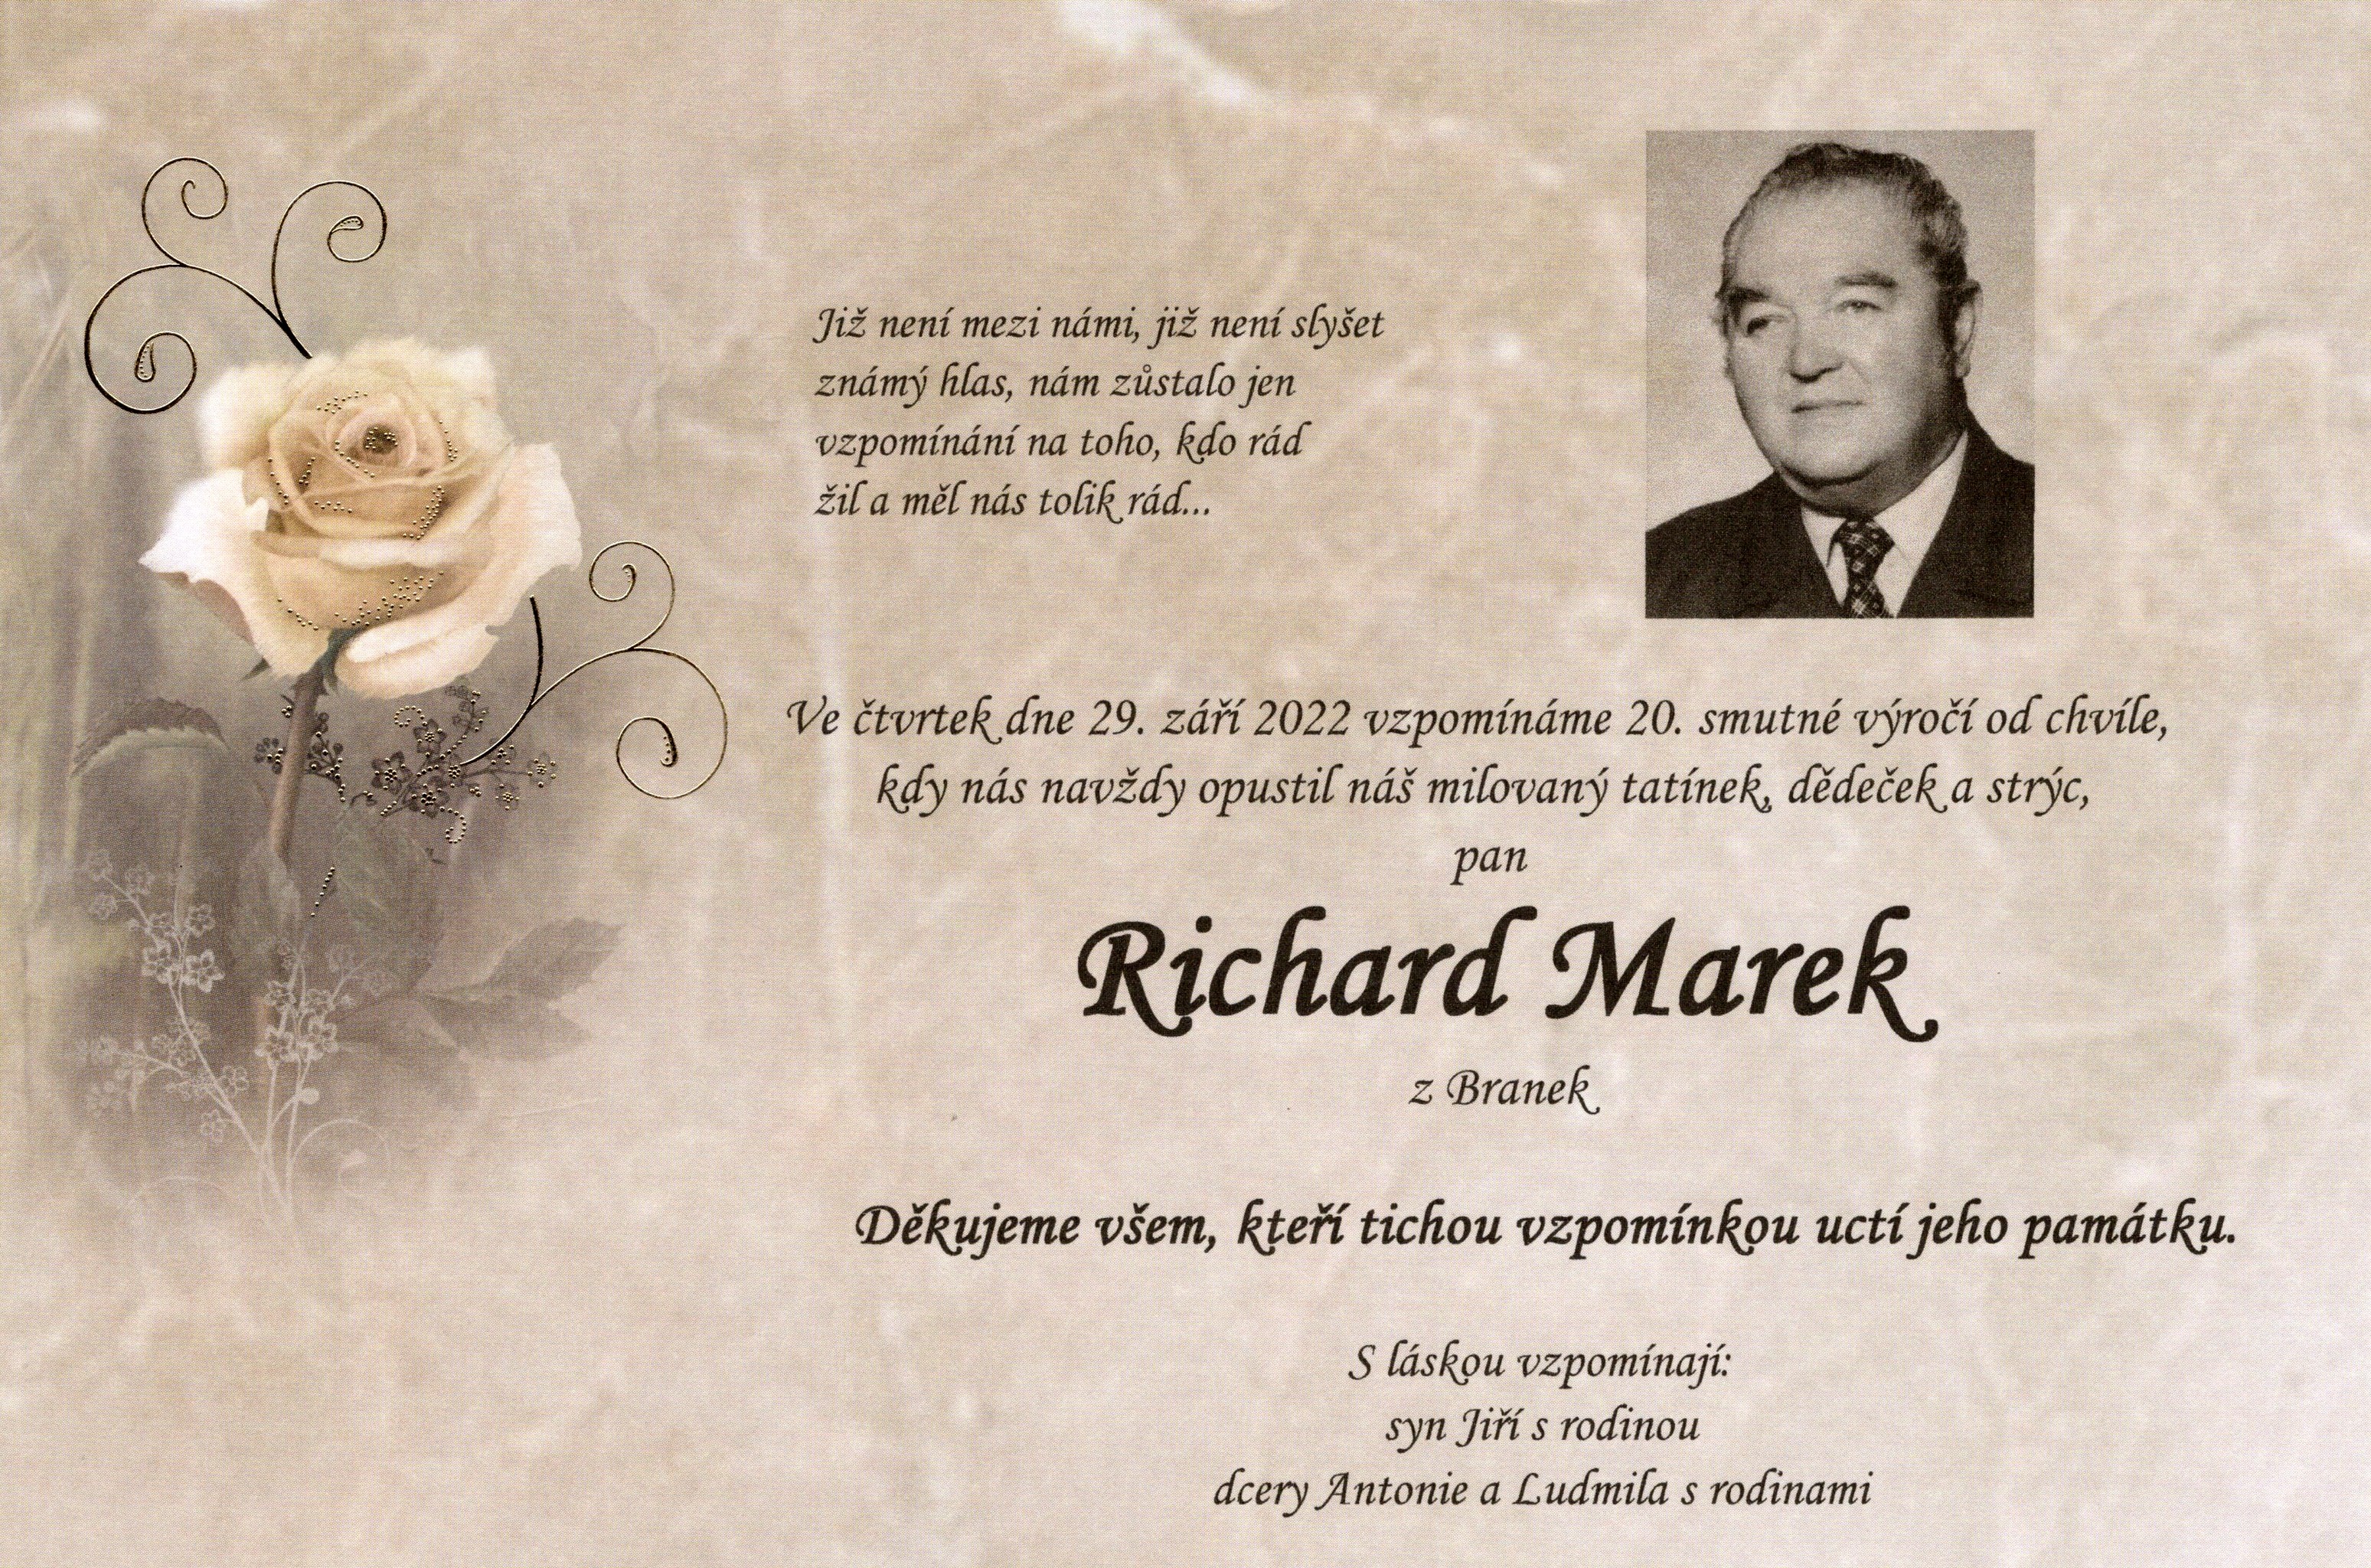 Richard Marek